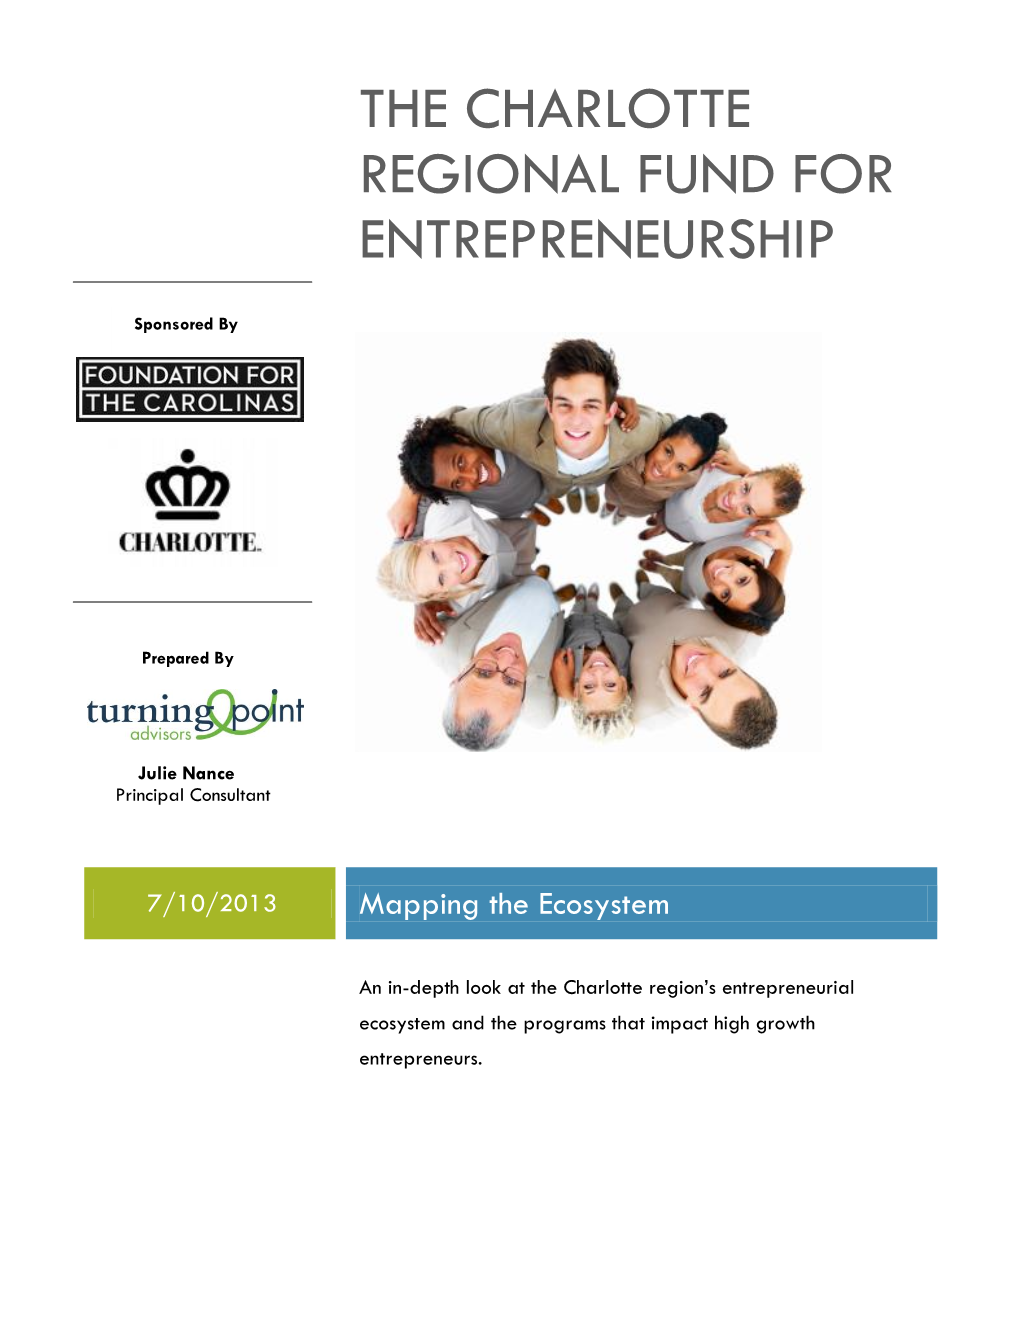 The Charlotte Regional Fund for Entrepreneurship